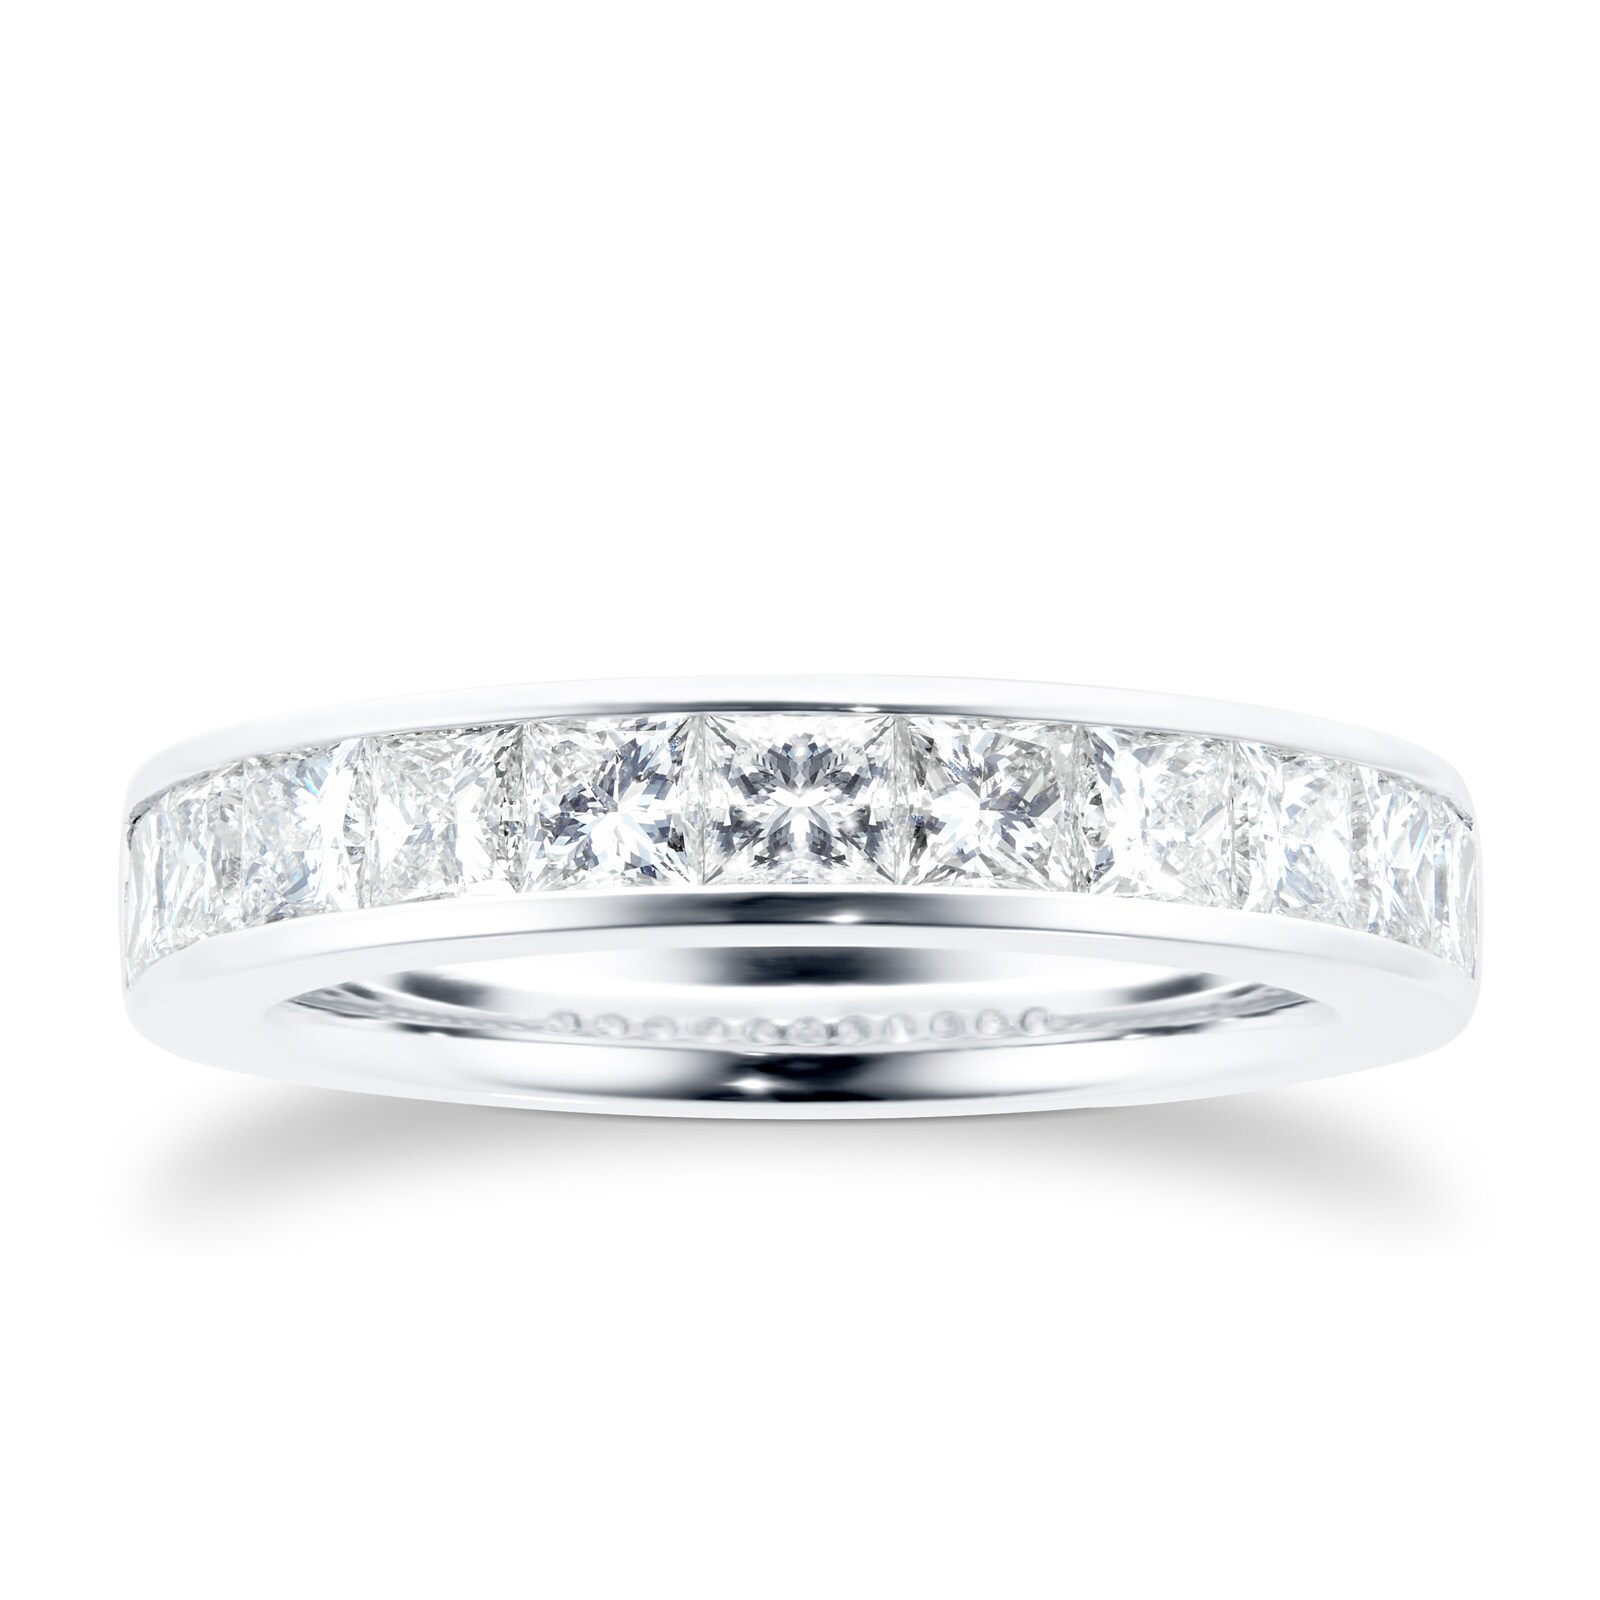 18 Carat White Gold 1.50 Carat Princess Cut Half Eternity Ring - Ring Size M.5